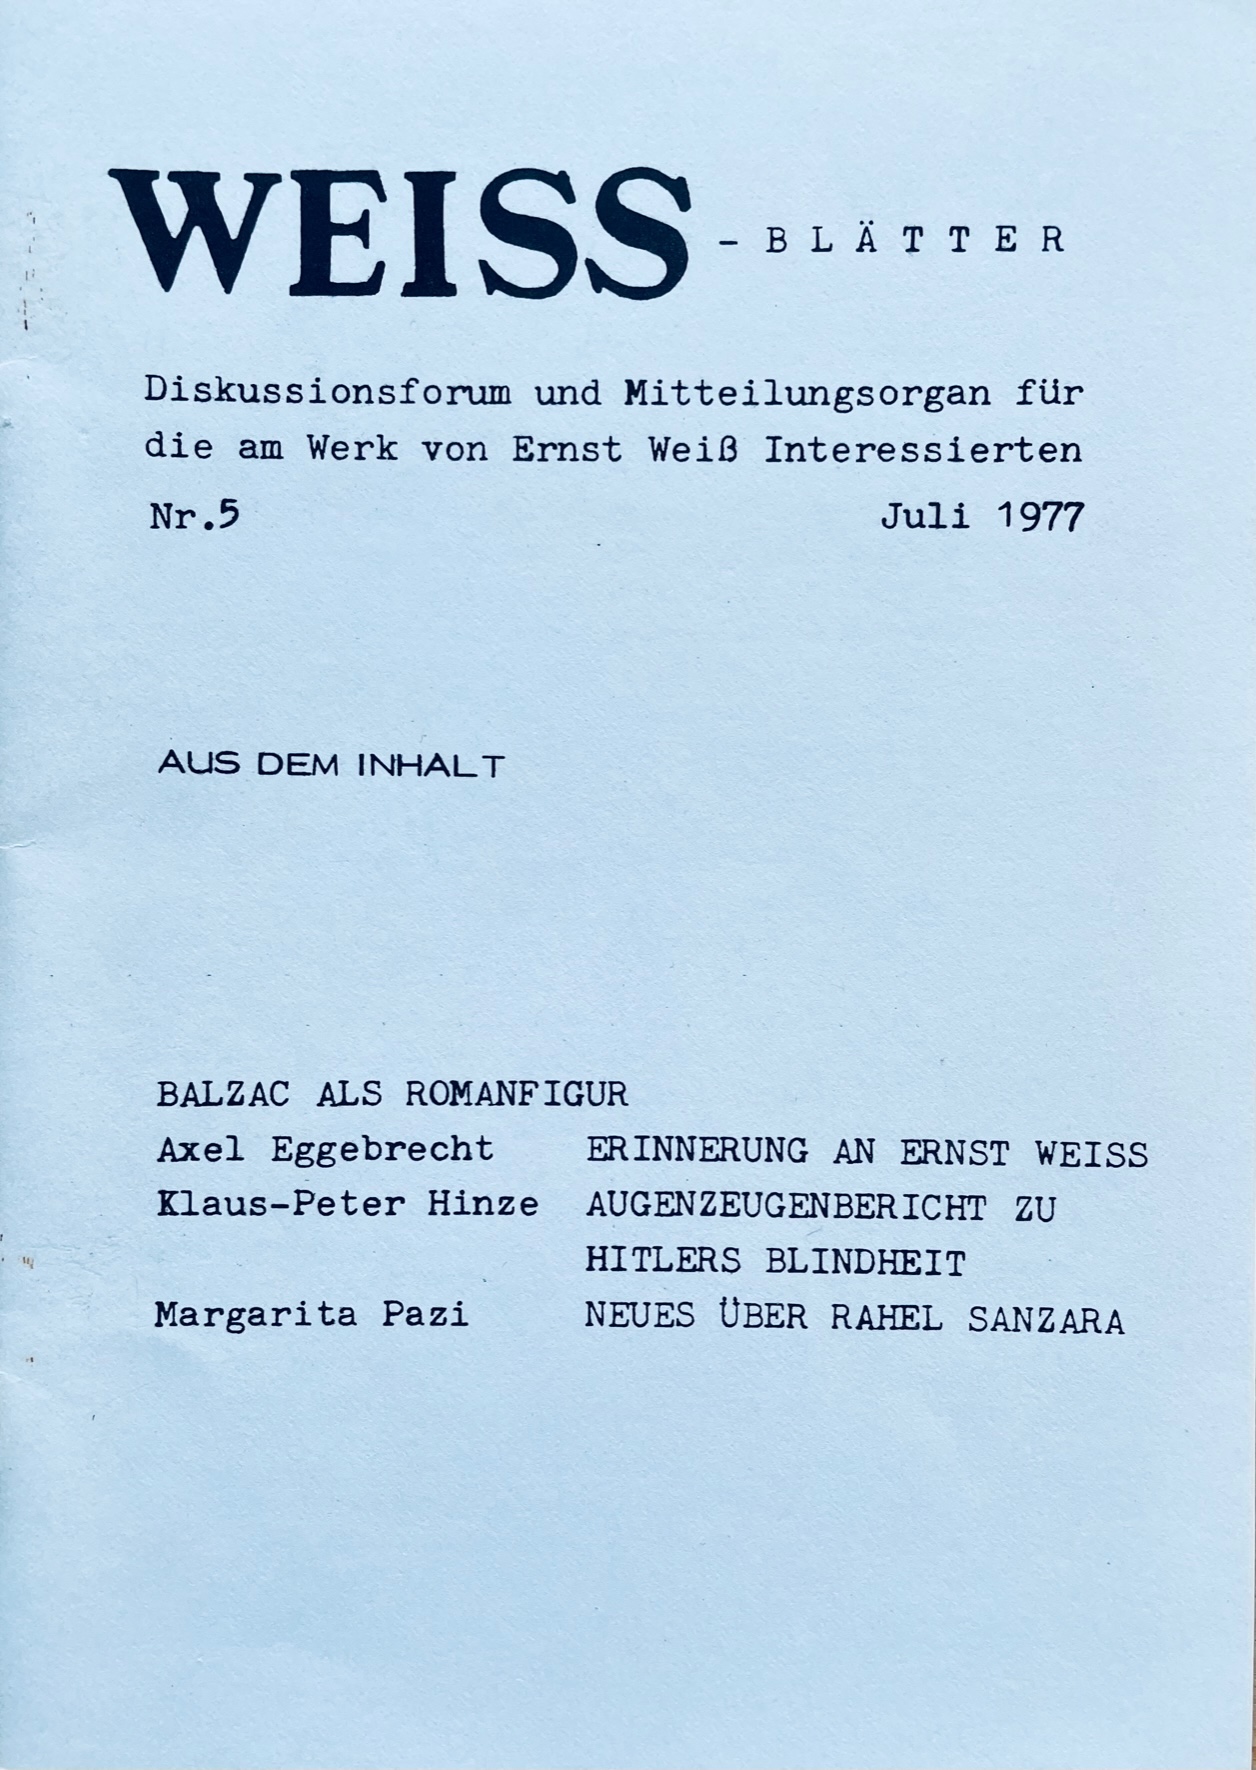 Weiß-Blätter Nr. 5 / Juli 1977